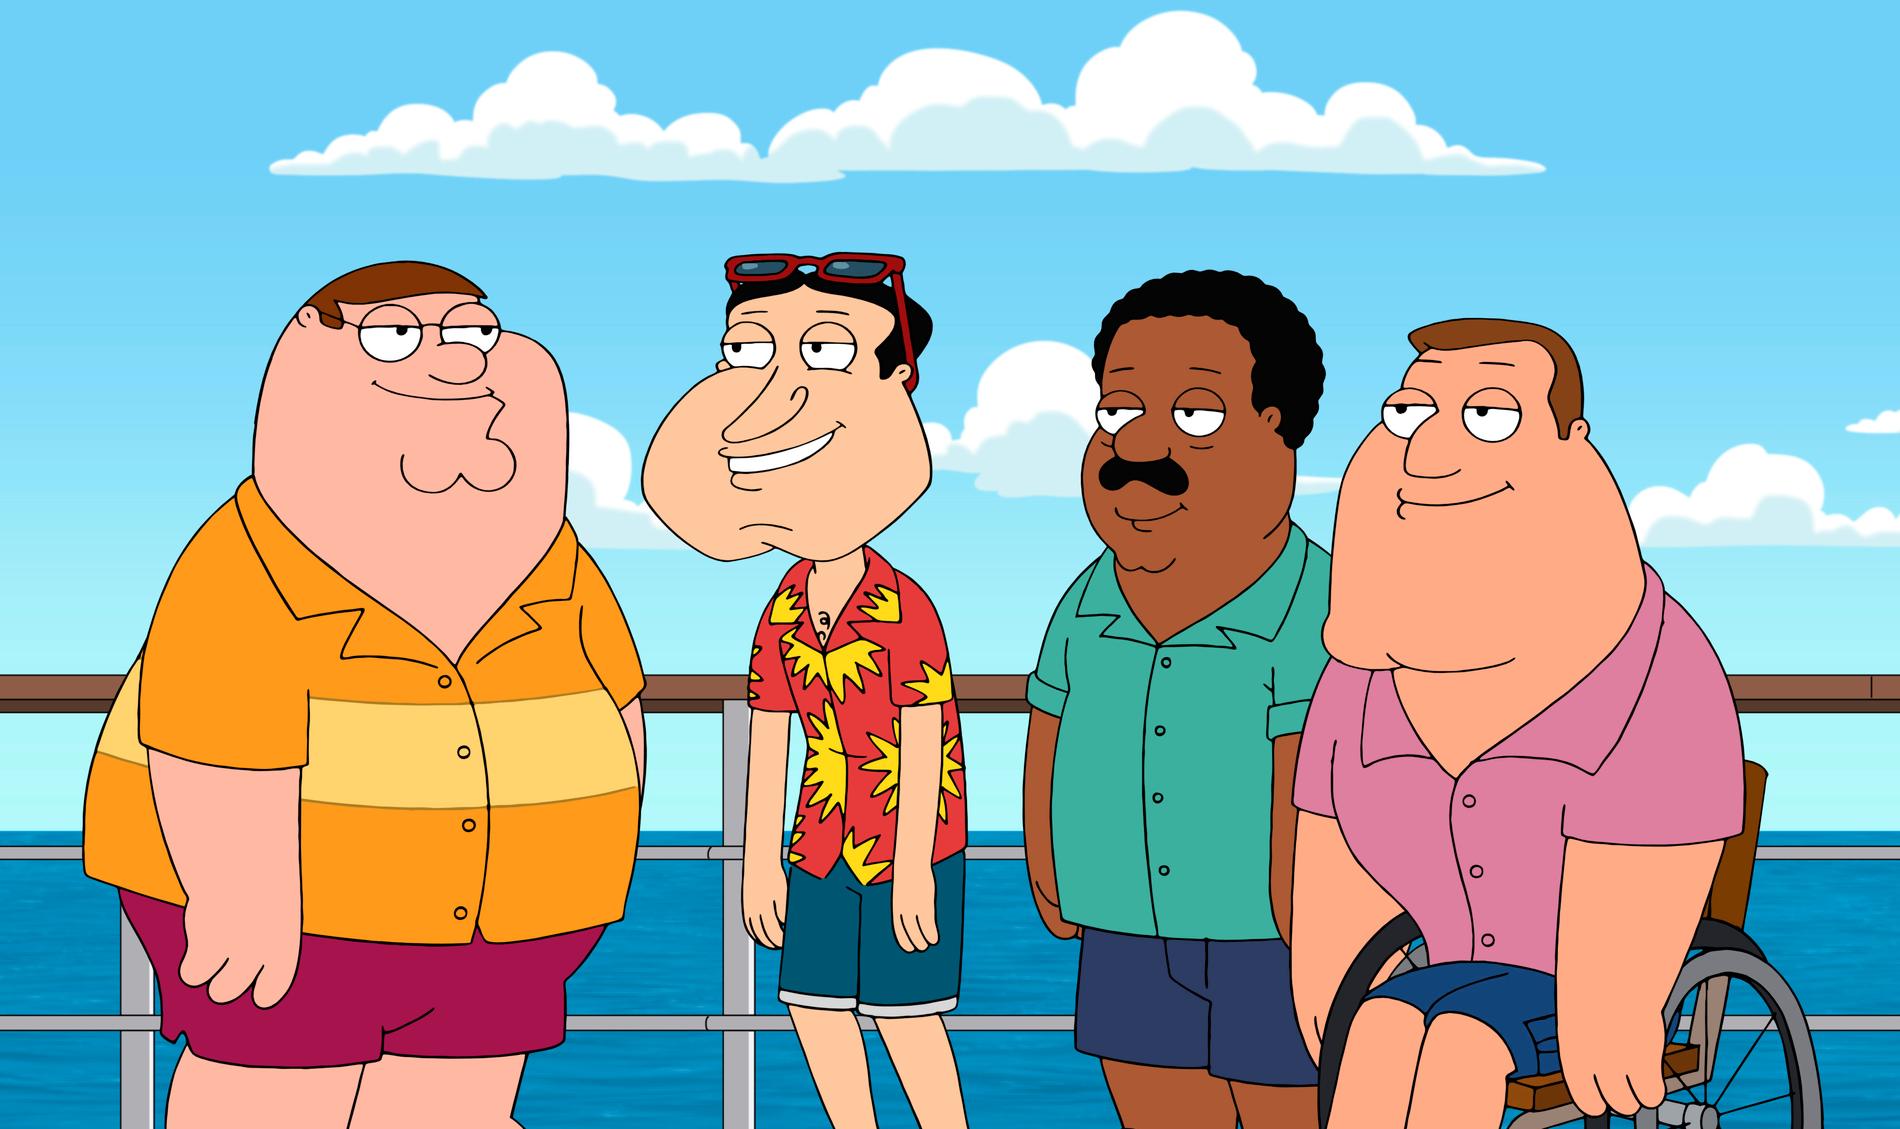 Den tecknade komediserien ”Family Guy” har precis avslutat sin tjugoförsta säsong. 